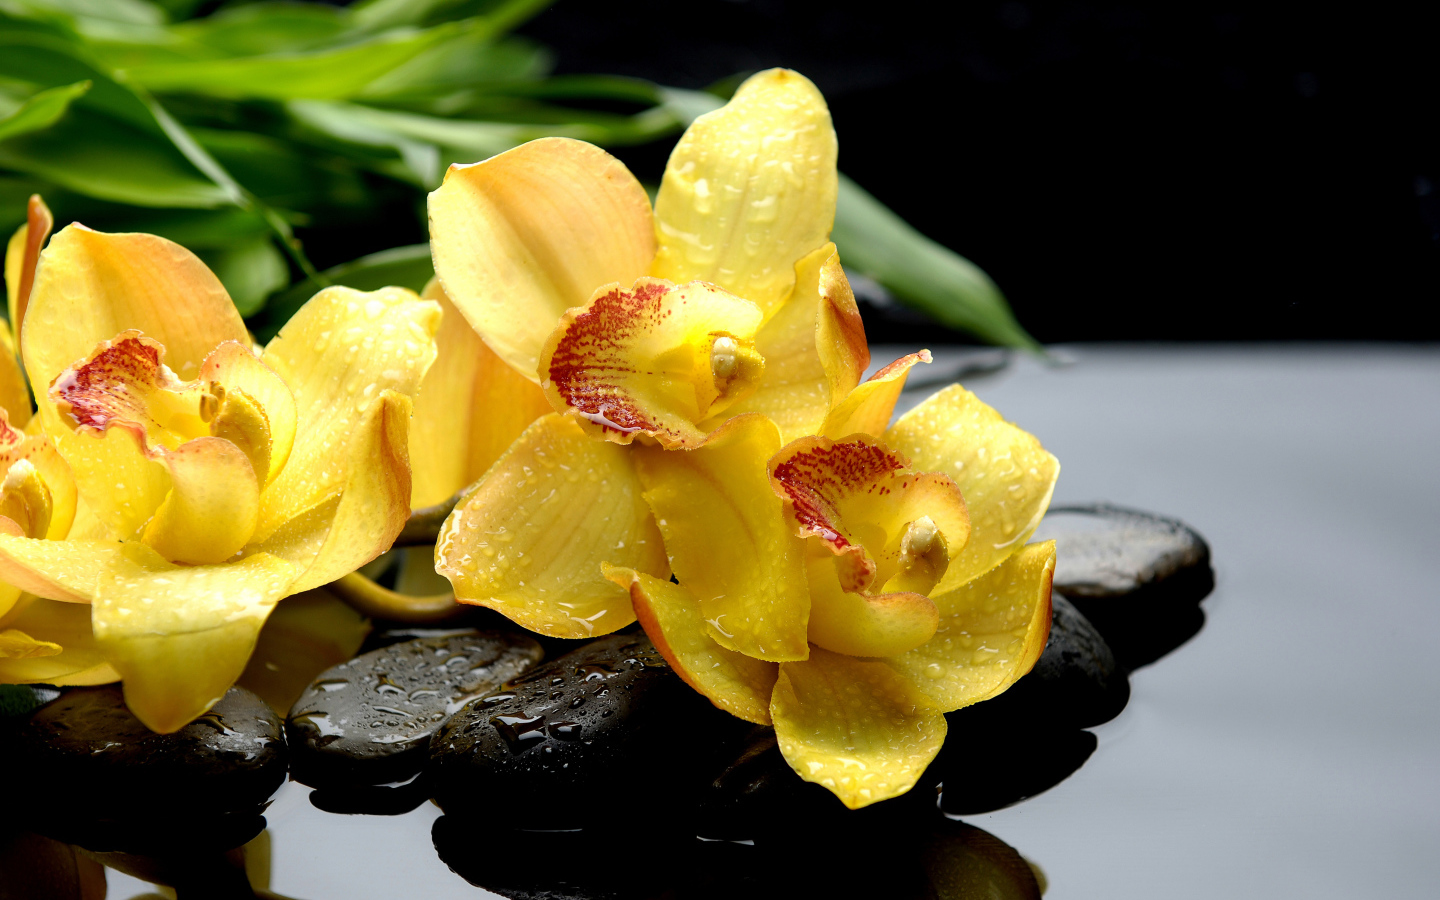 Желтые цветы орхидеи лежат на камне в воде